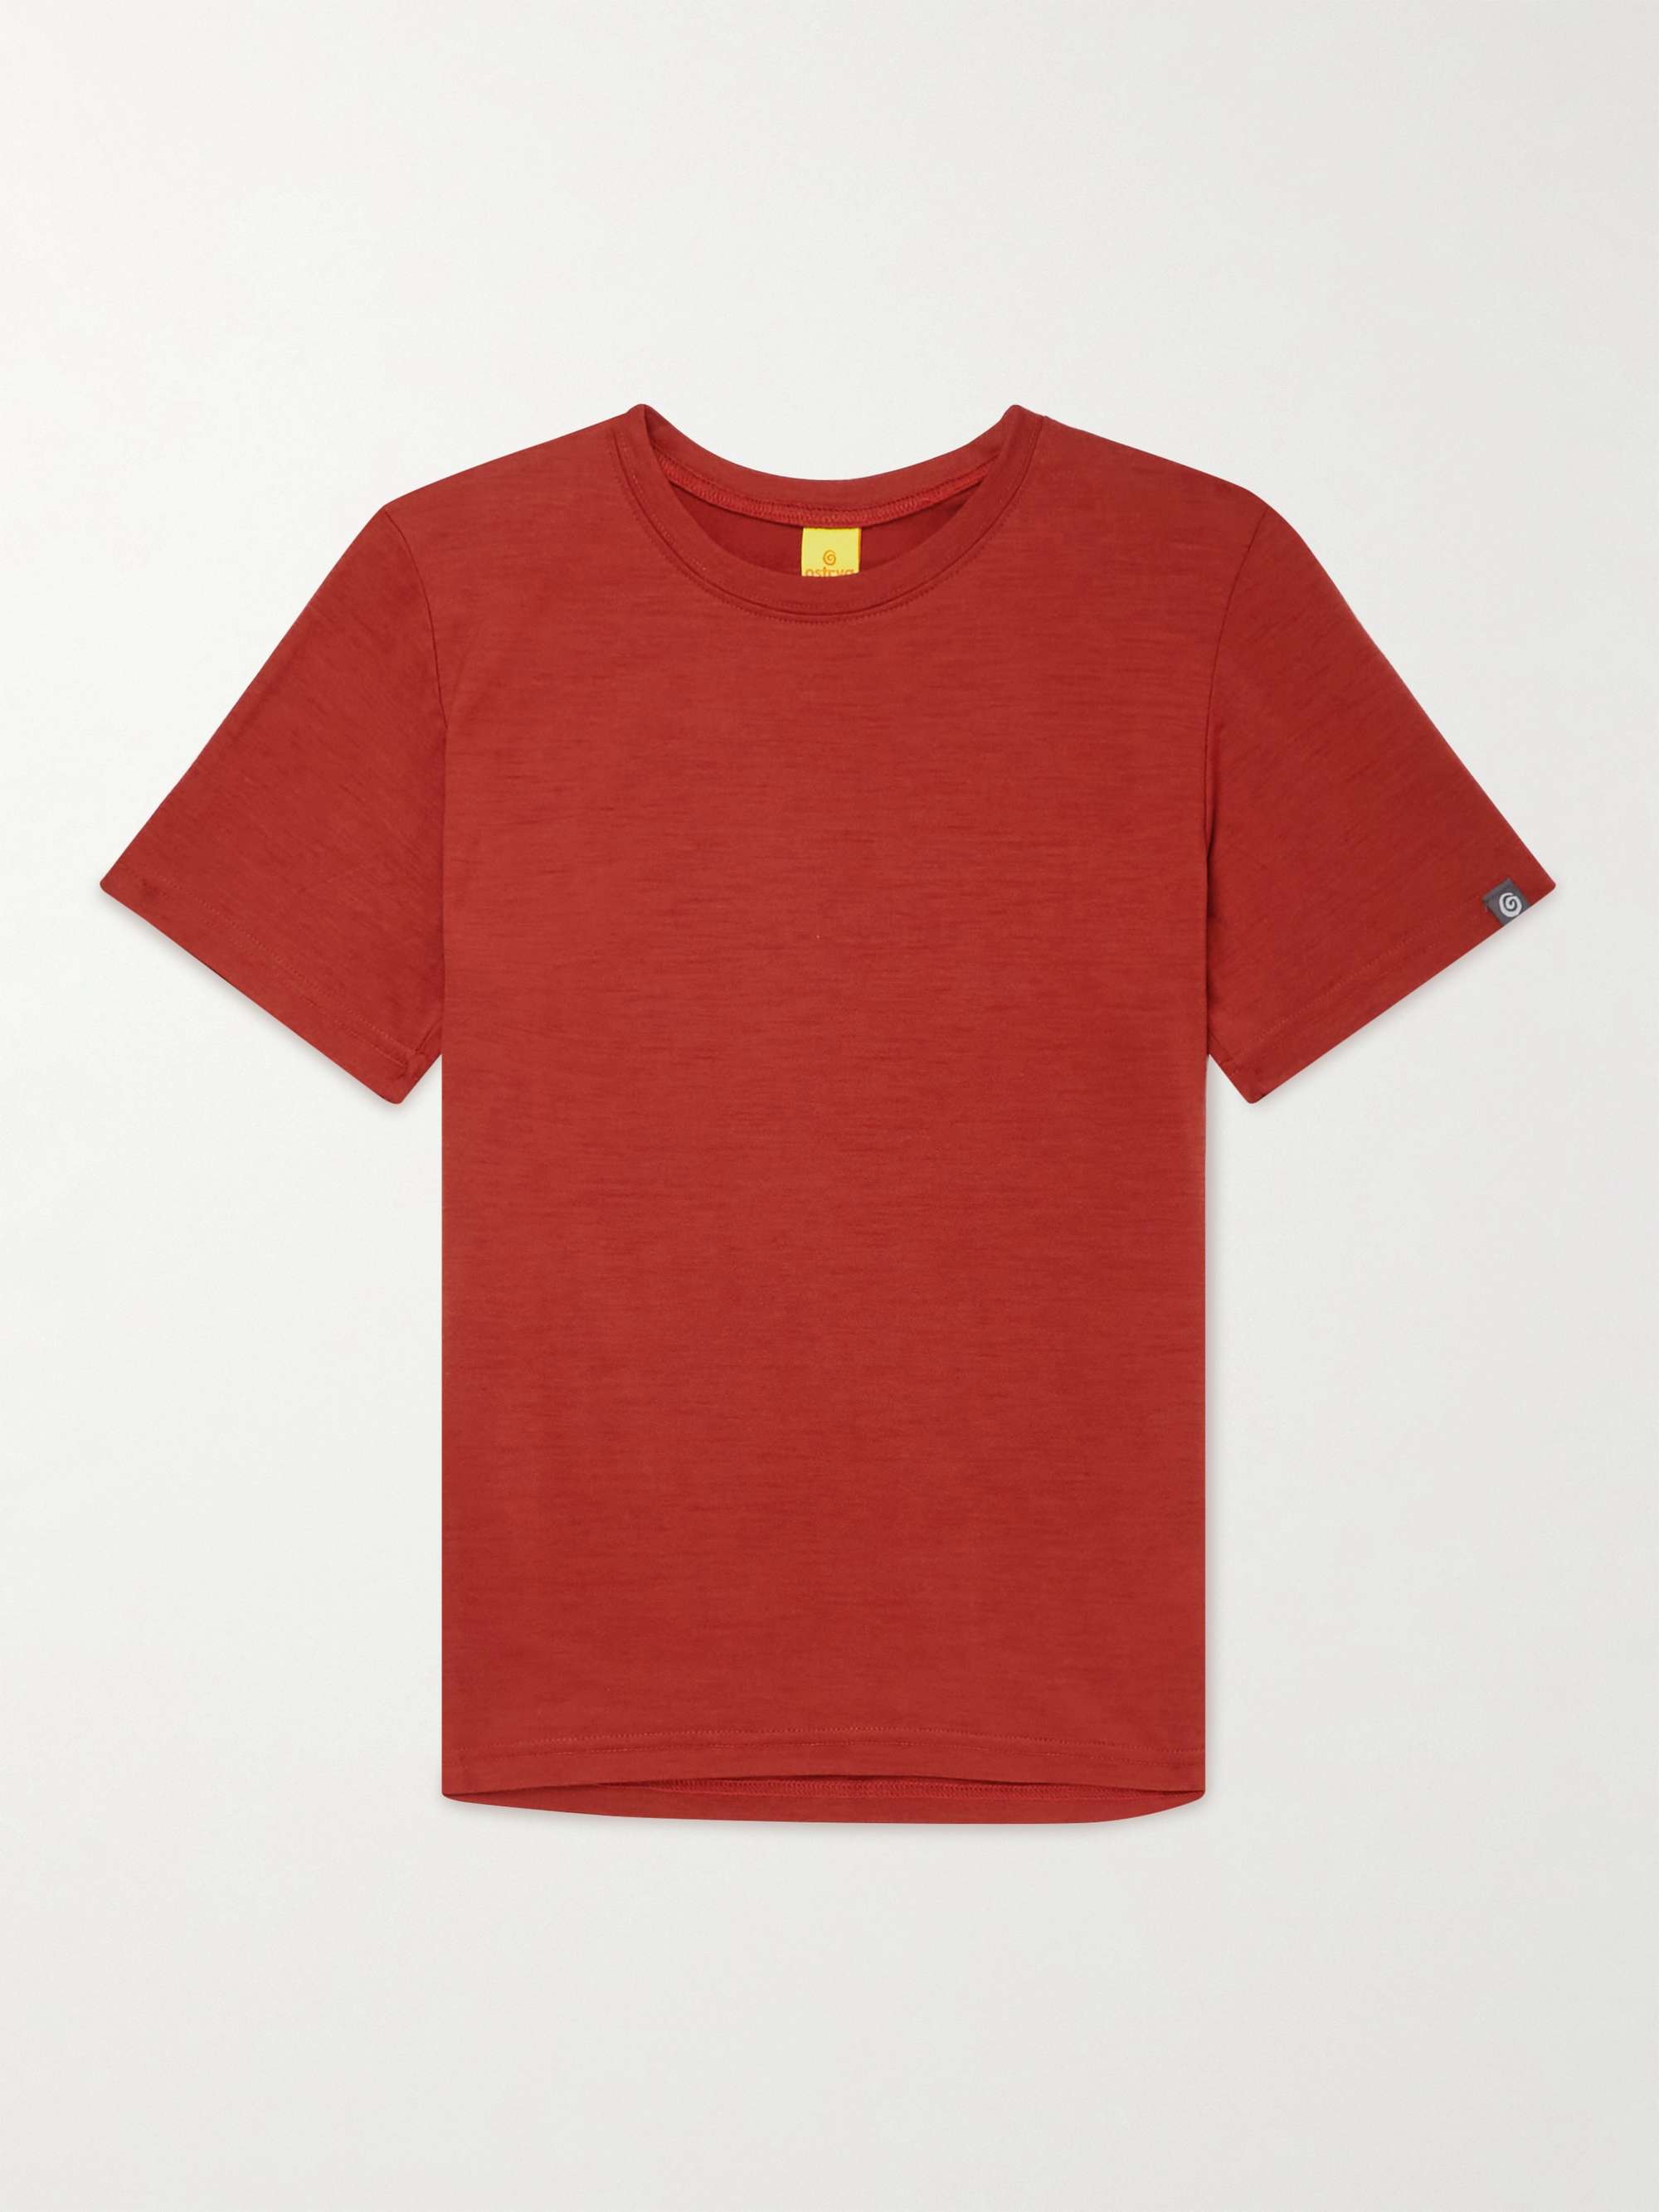 OSTRYA Koroc Merino Wool T-Shirt